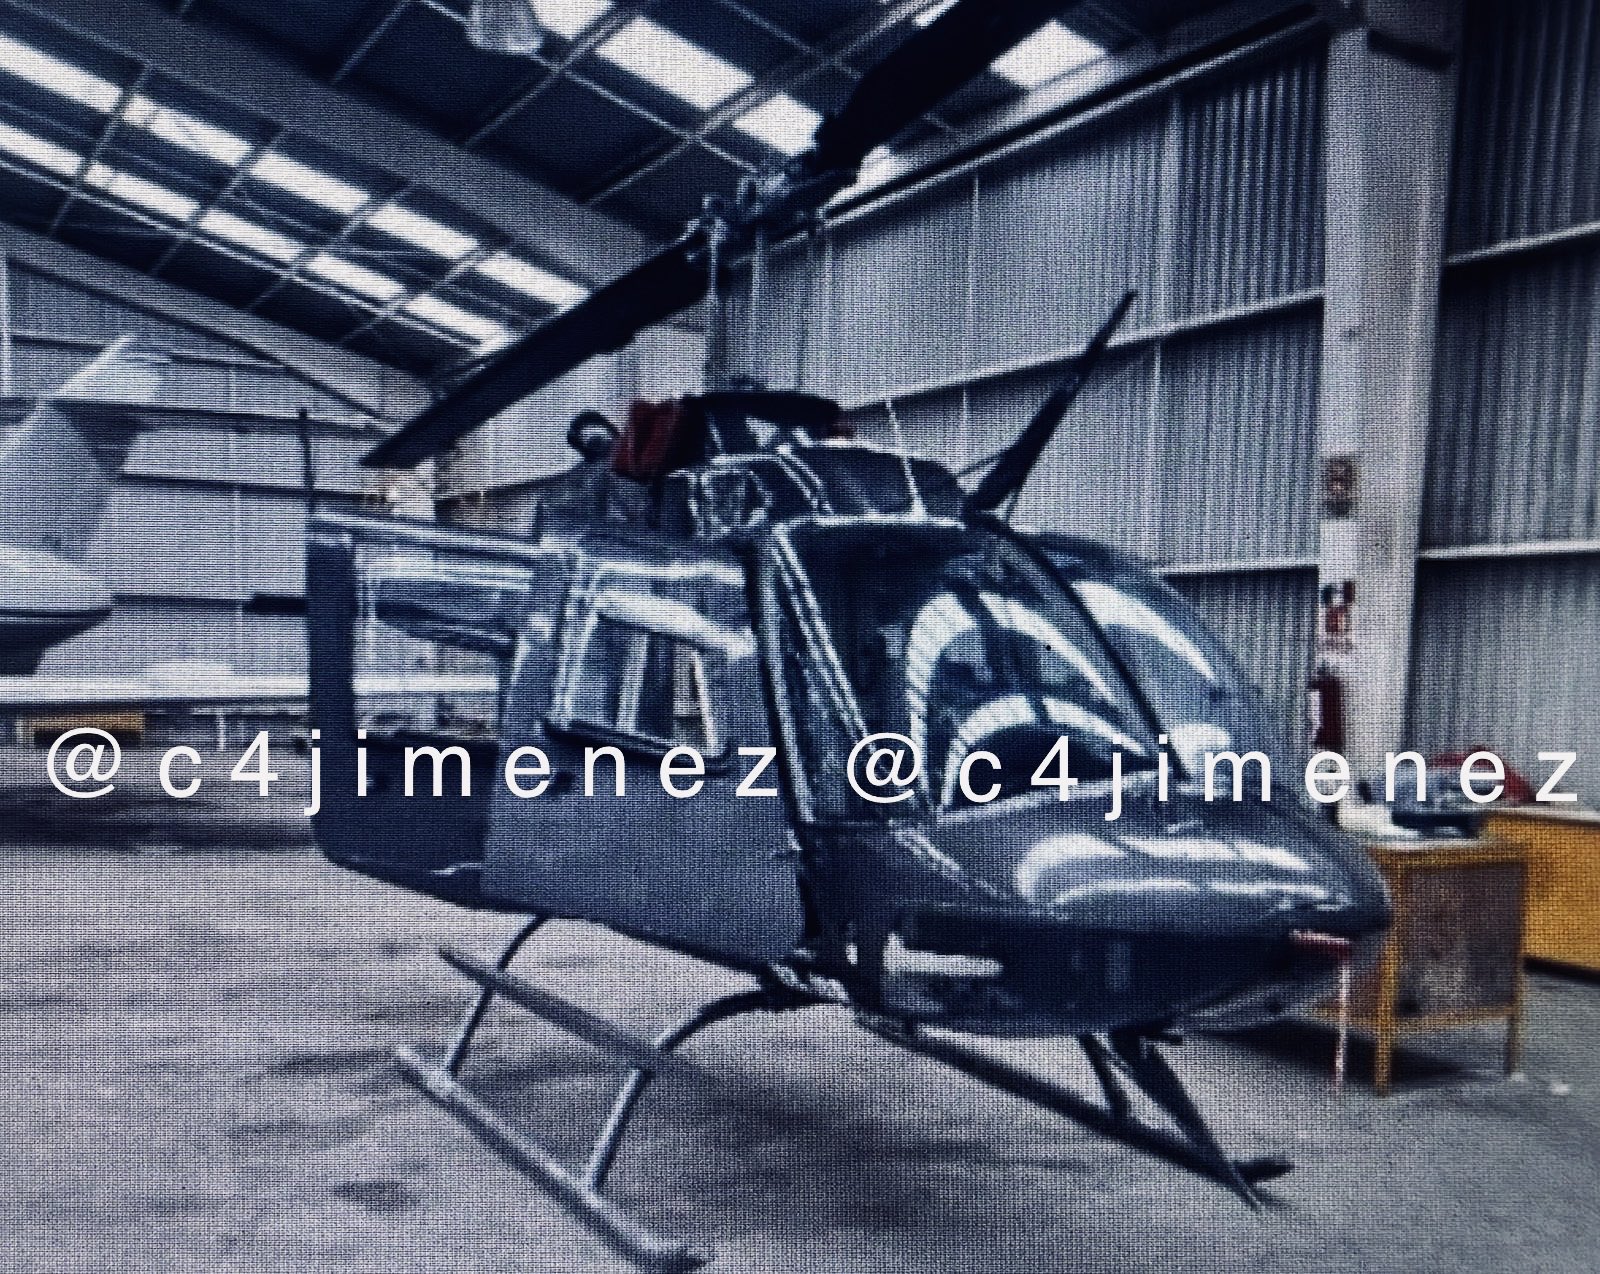 Supuesto helicóptero robado de los hangares del AICM
Foto: Twitter/@c4jimenez